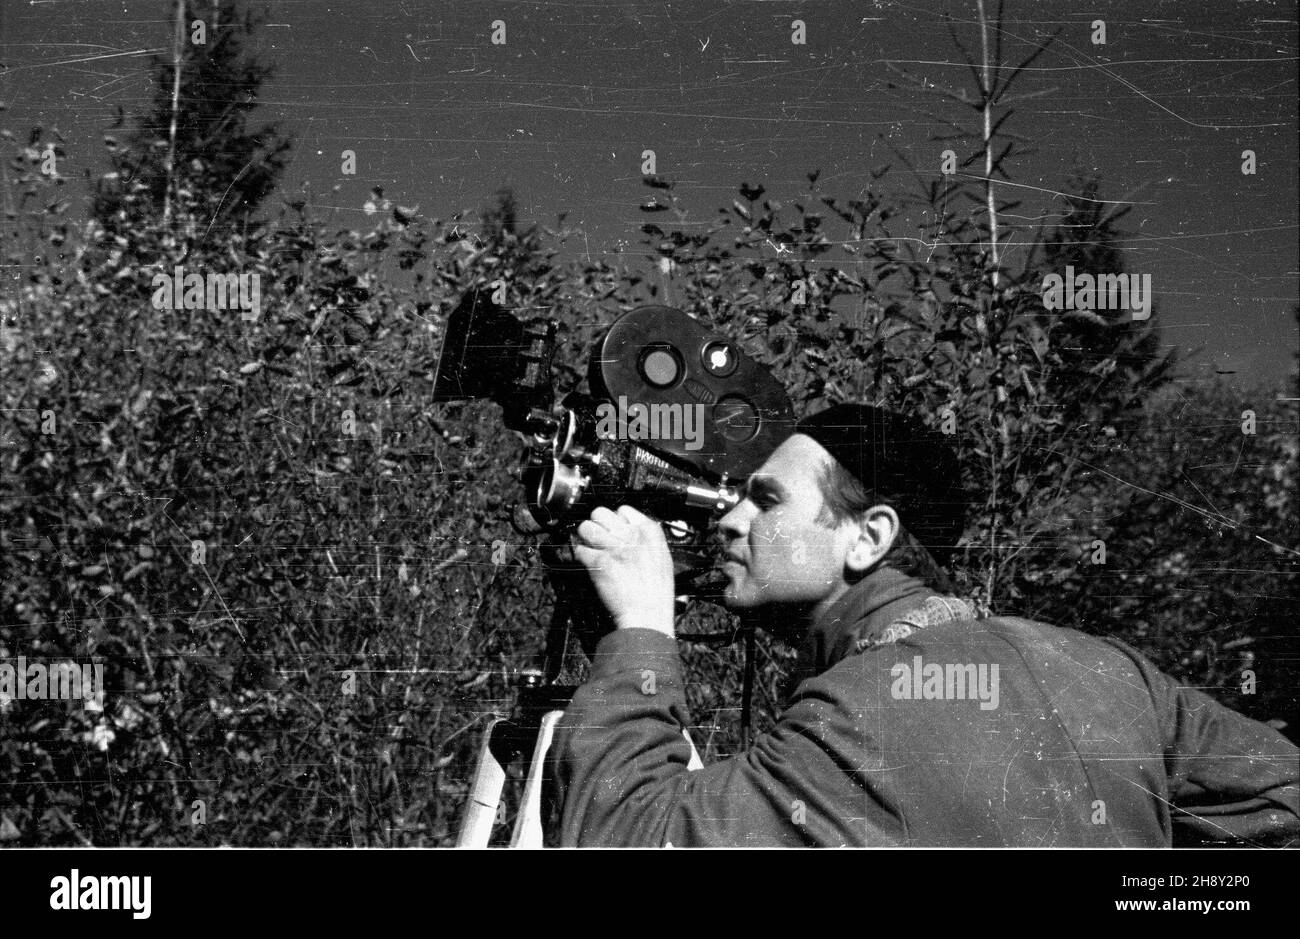 Polska, 1946-06. Operator Polskiej Kroniki Filmowej (PKF). mw  PAP/Hadura  Dok³adny dzieñ wydarzenia nieustalony.      Poland, June 1946. A Polish Newsreel camerman.  mw  PAP/Hadura Stock Photo